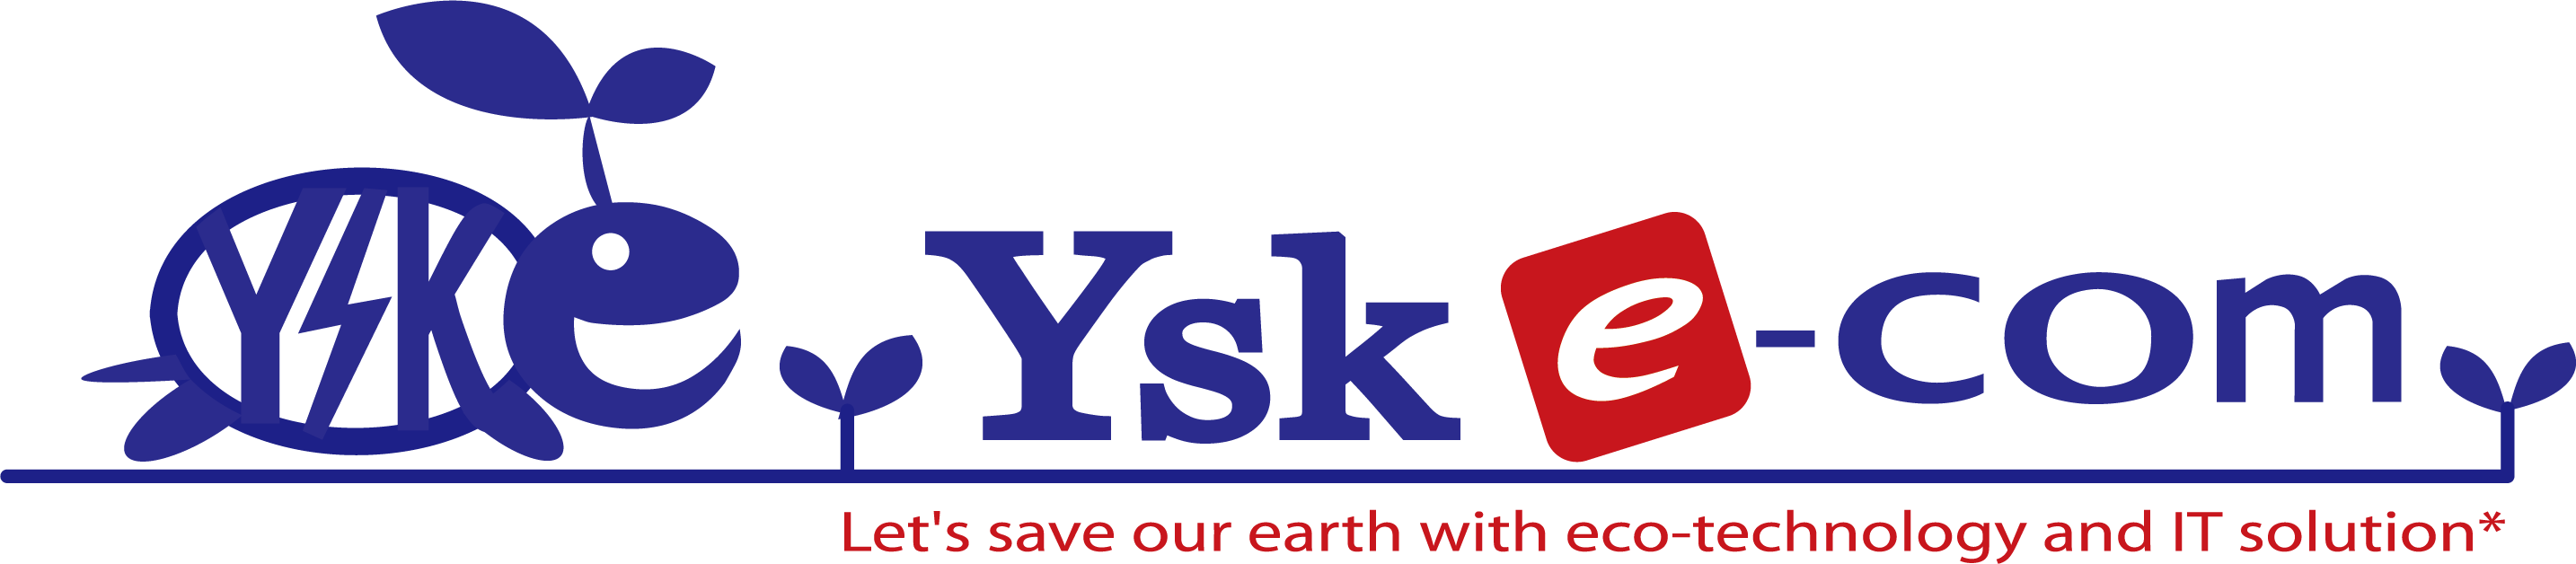 Ysk e-com